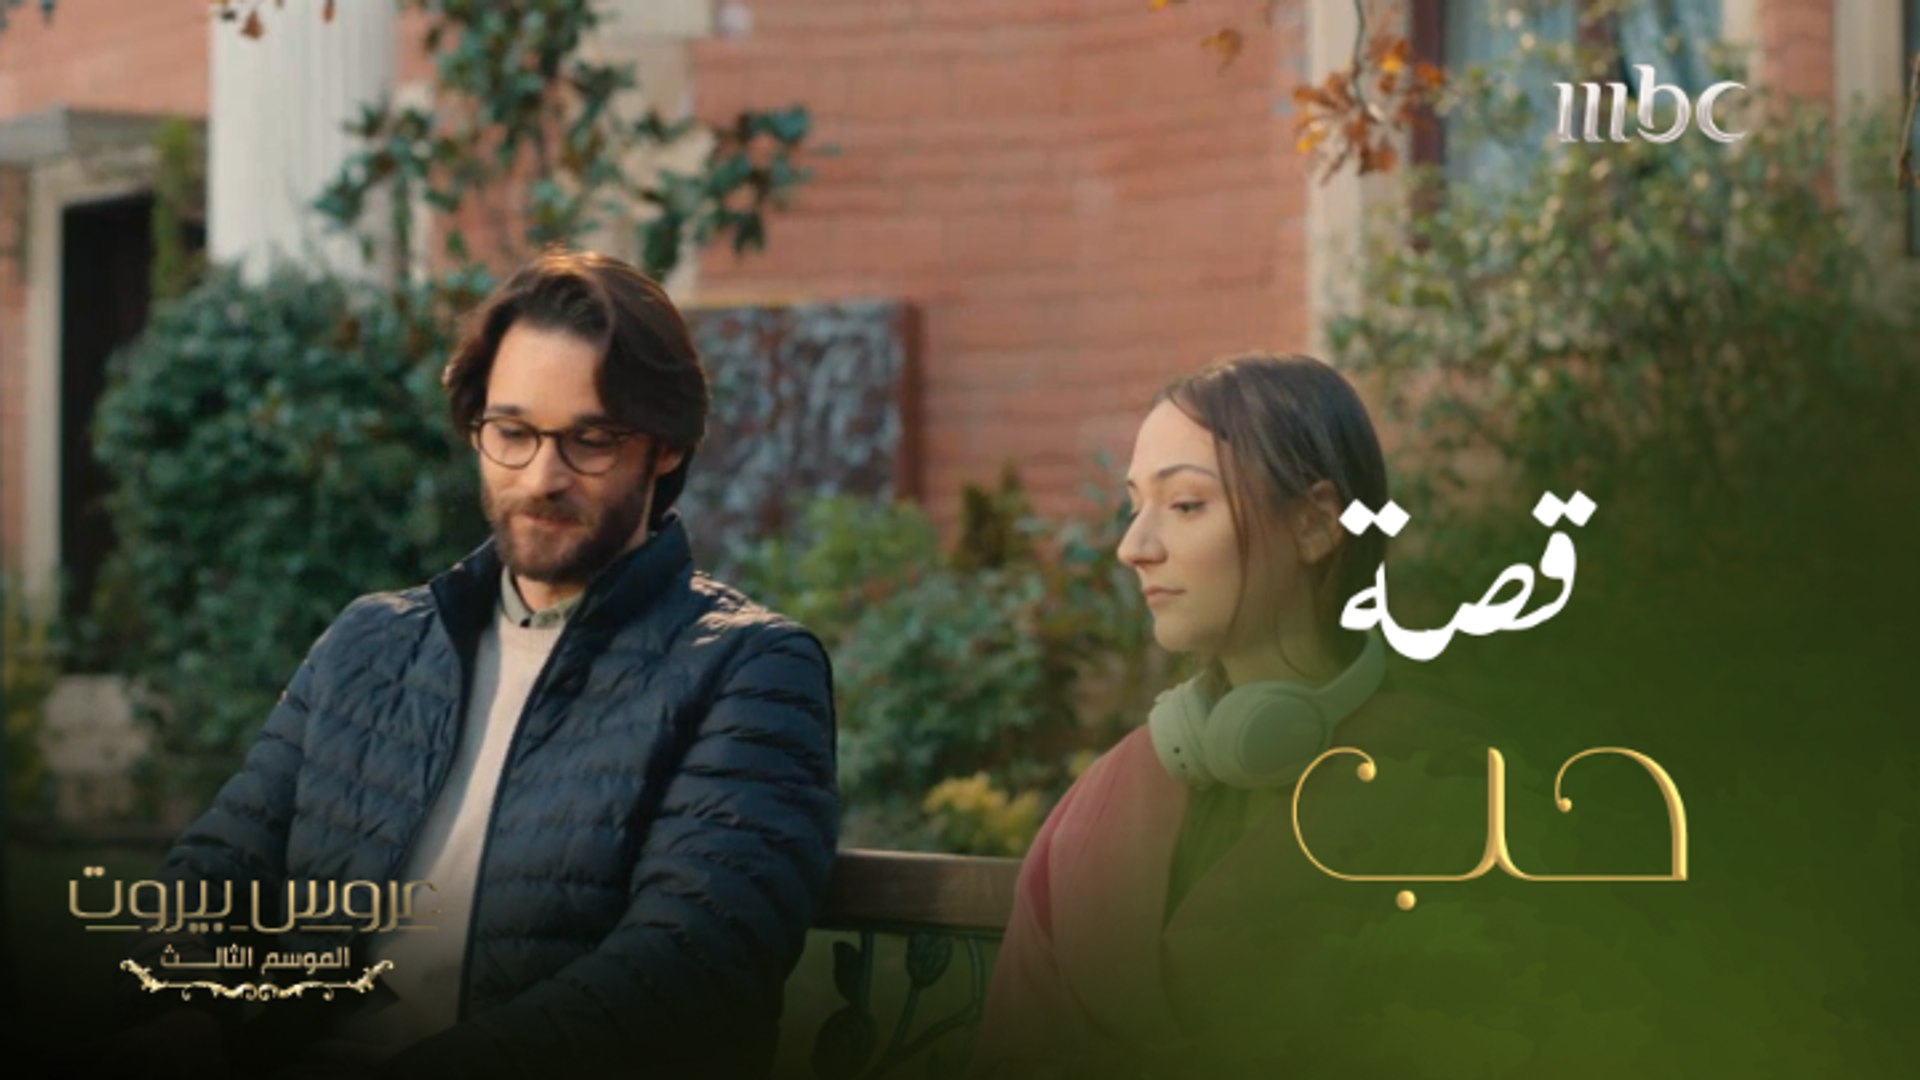 عروس بيروت | الحلقة 36| قصة حب جديدة ببيت الضاهر - فيديو Dailymotion